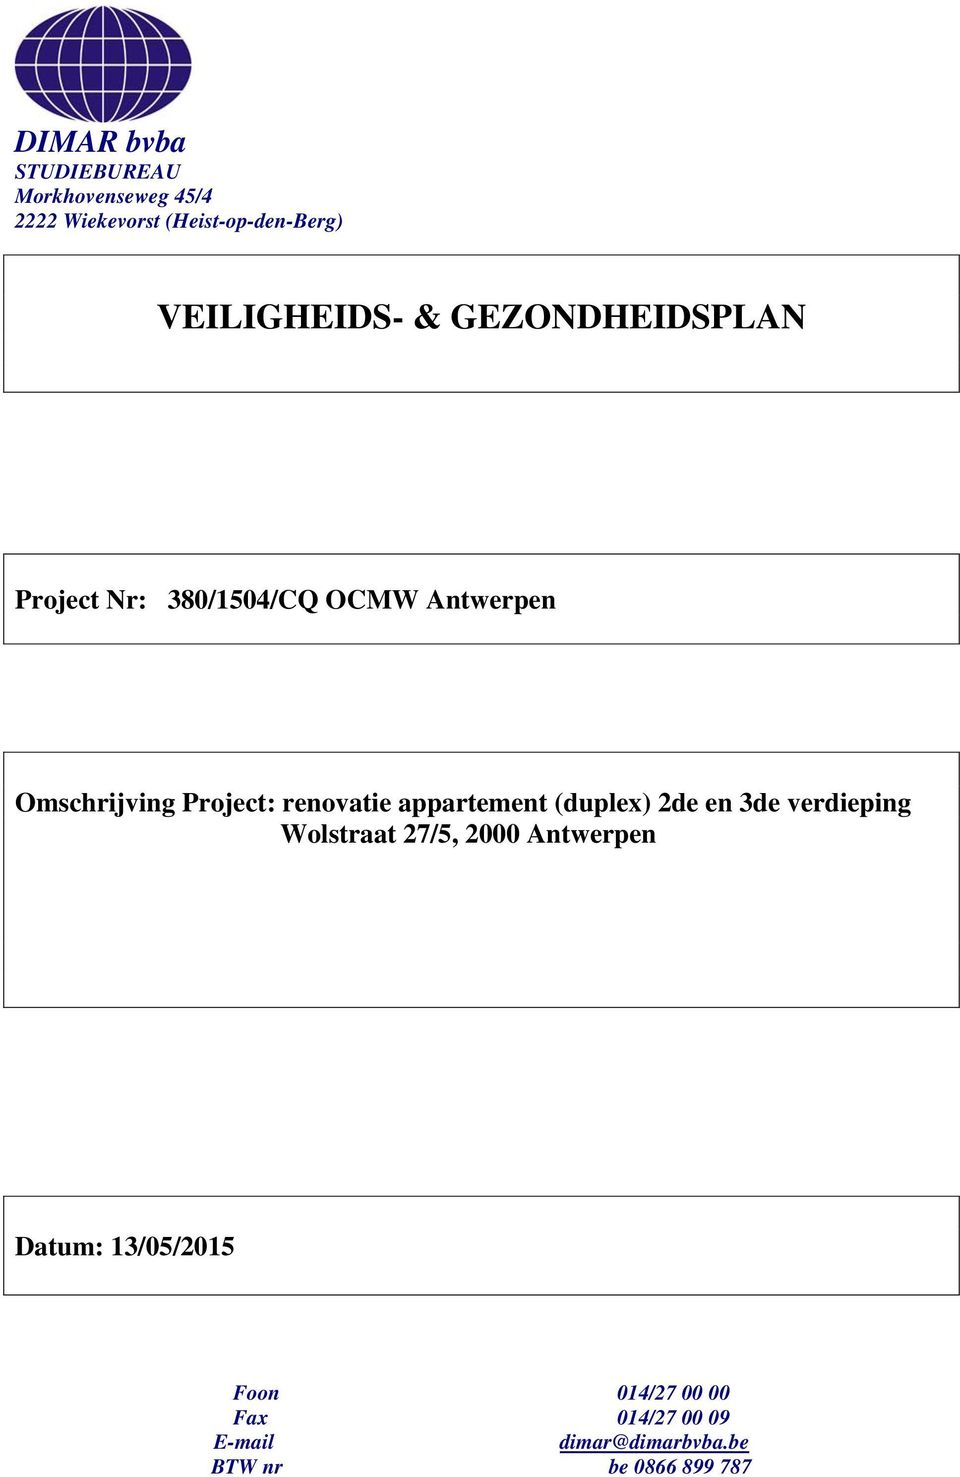 Project: renovatie appartement (duplex) 2de en 3de verdieping Wolstraat 27/5, 2000